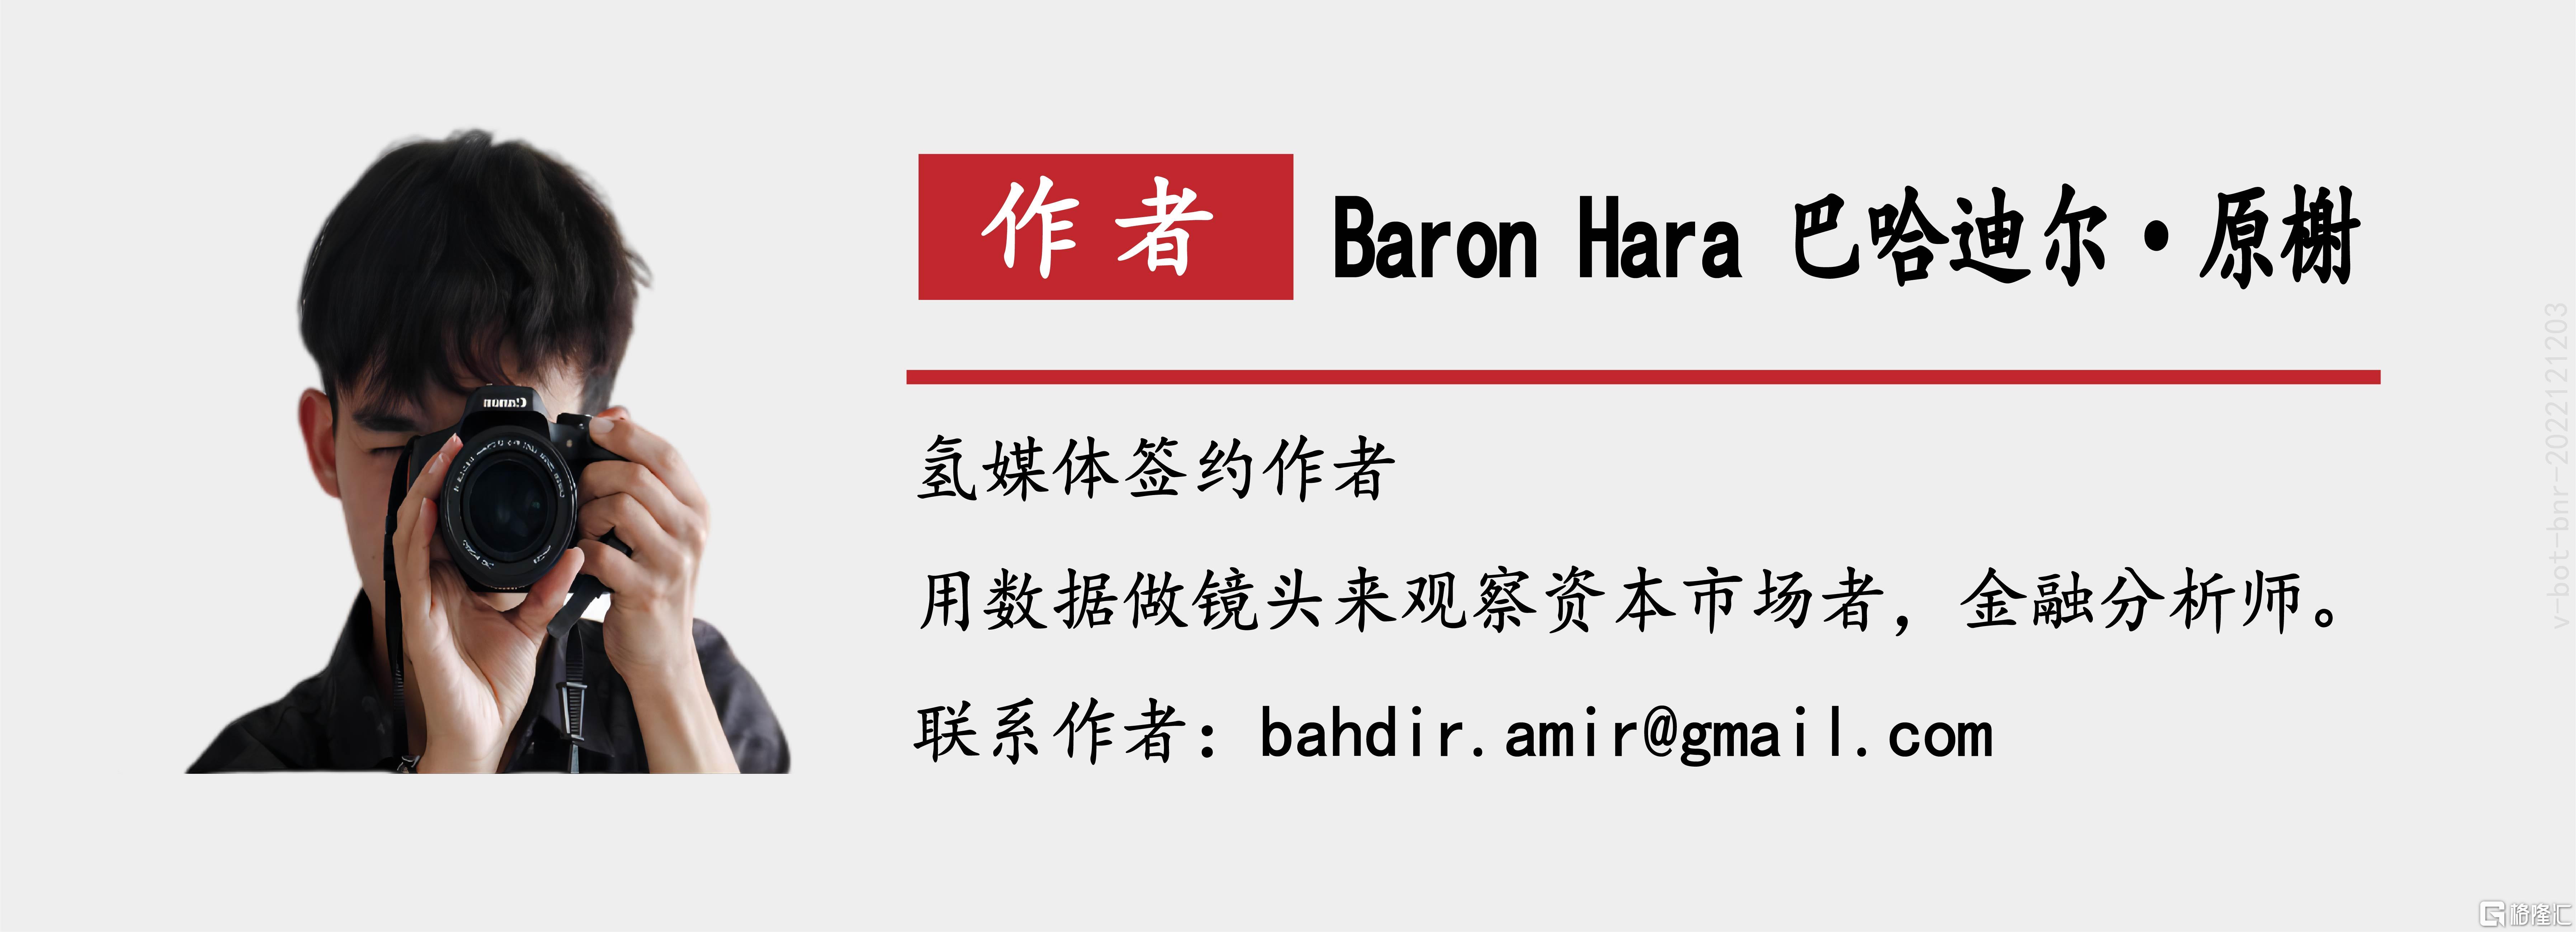 氢媒体_微信-作者介绍-baron hara 2350-850_微信-作者介绍-baron hara 2350-850.jpg